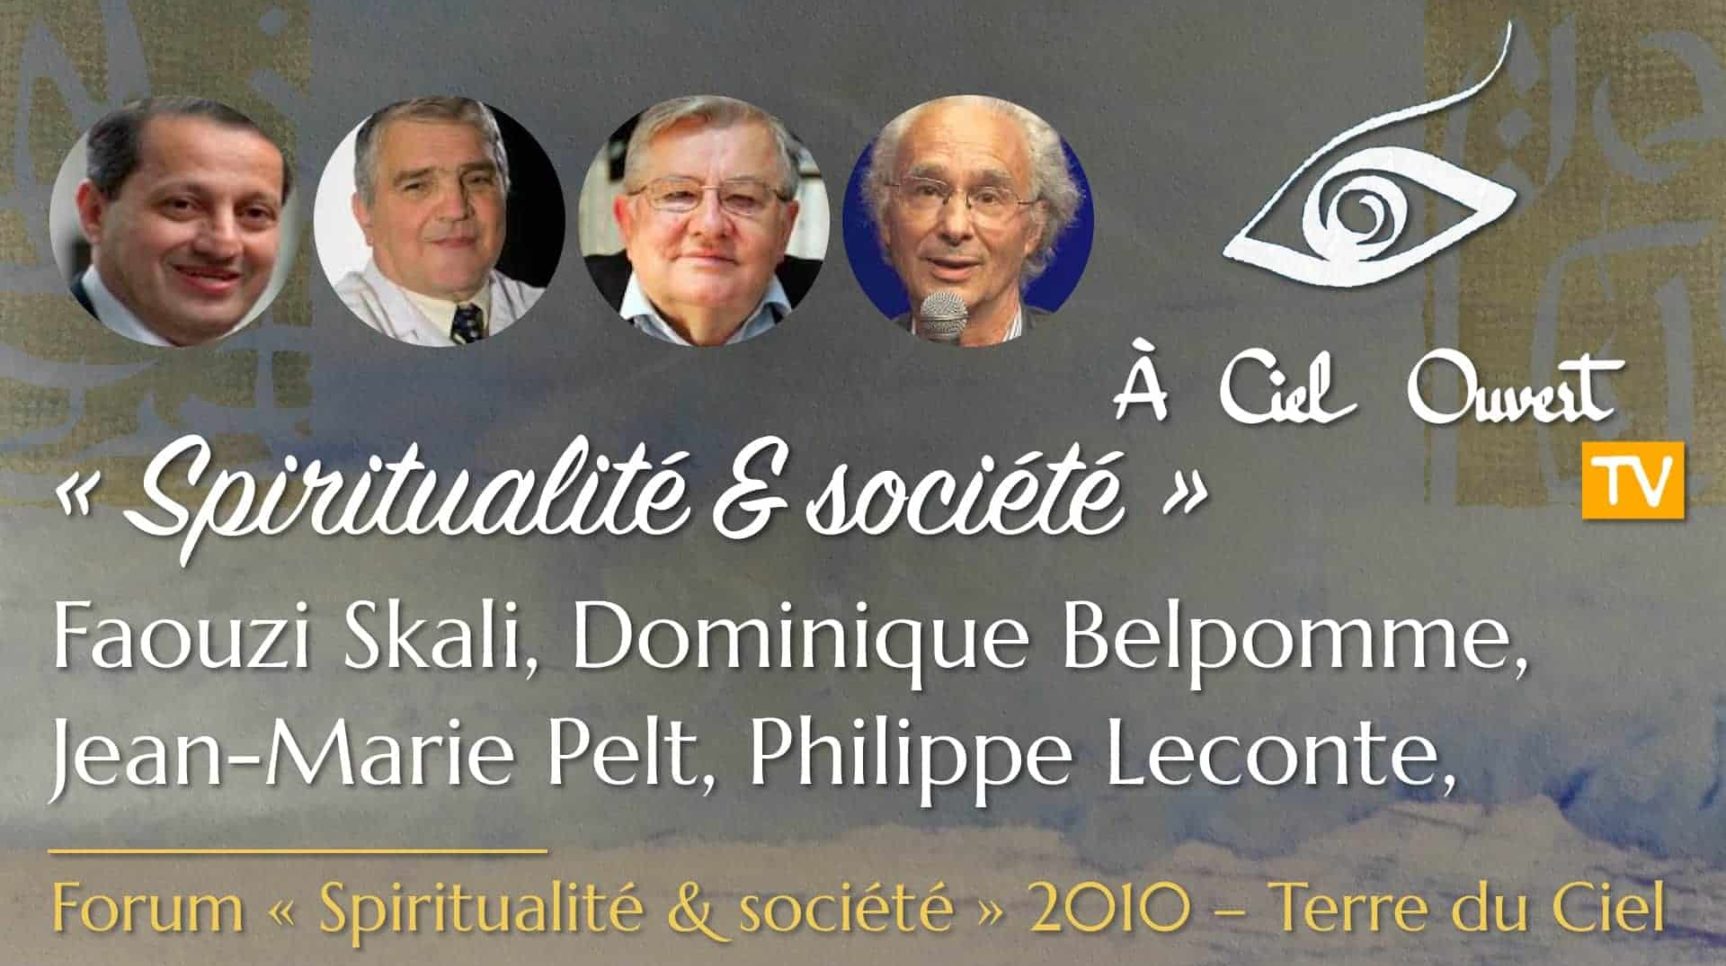 Spiritualité & Société – Faouzi Skali, Philippe Leconte, Jean-Marie Pelt, Dominique Belpomme